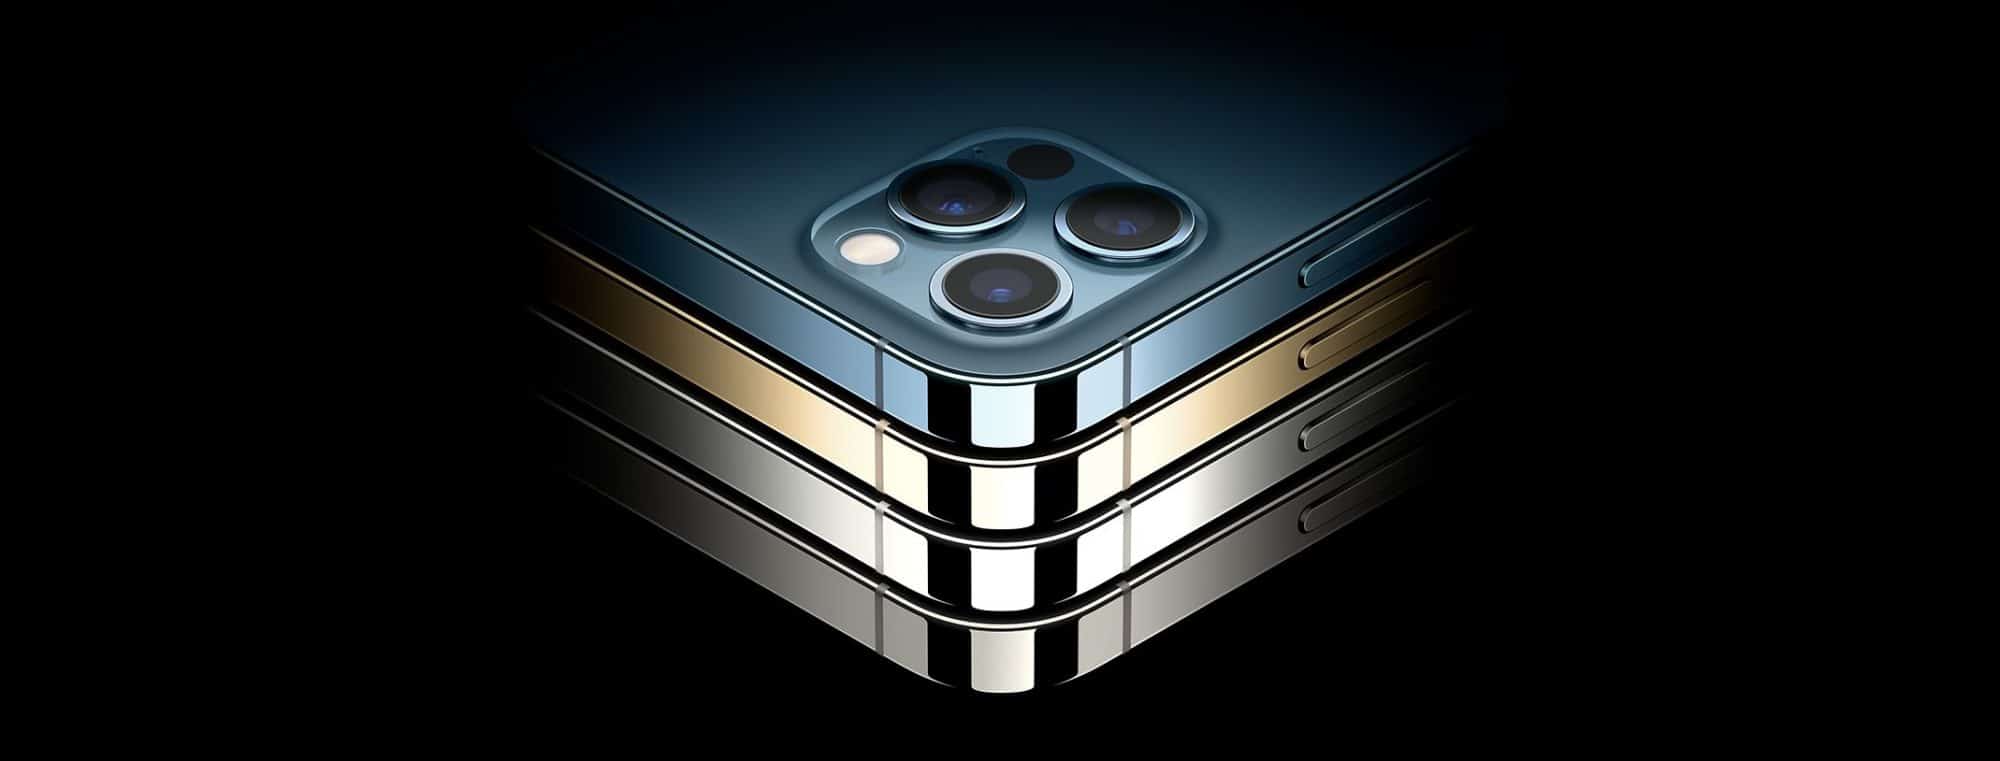 Sẽ không có nâng cấp đáng kể về camera iPhone cho tới năm 2022